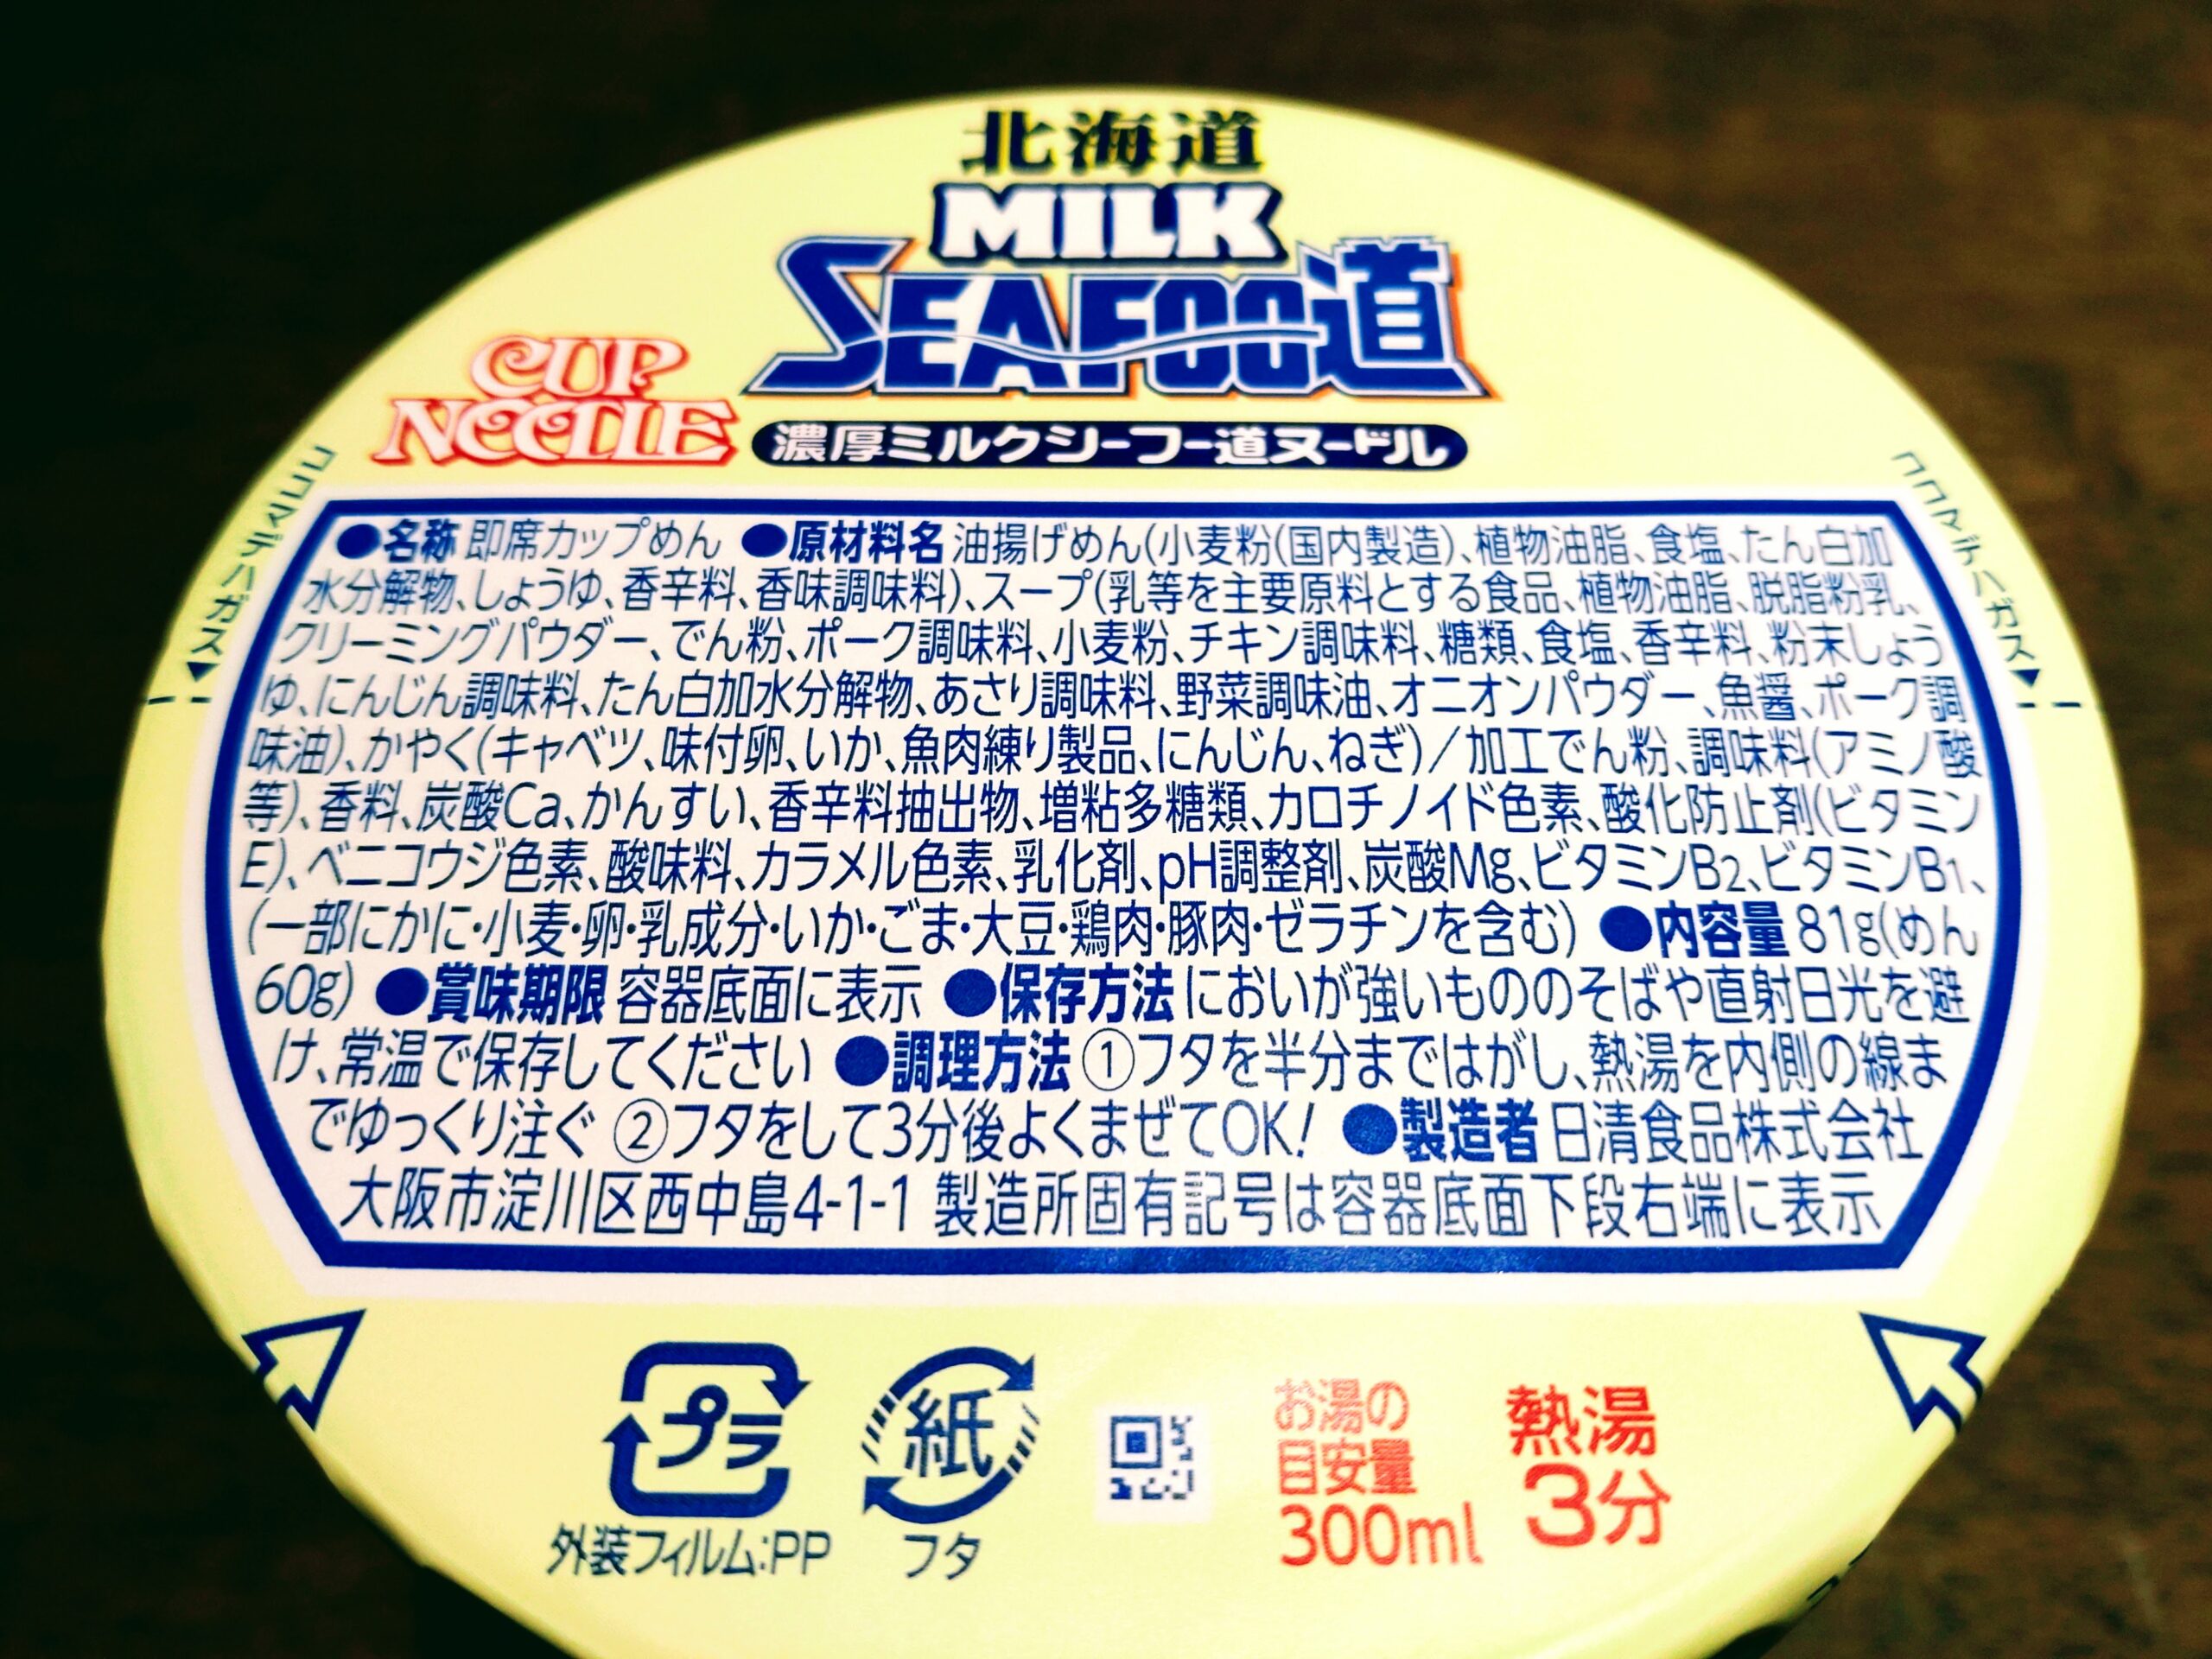 カップヌードル 北海道濃厚ミルクシーフー道ヌードルの原材料名と内容量